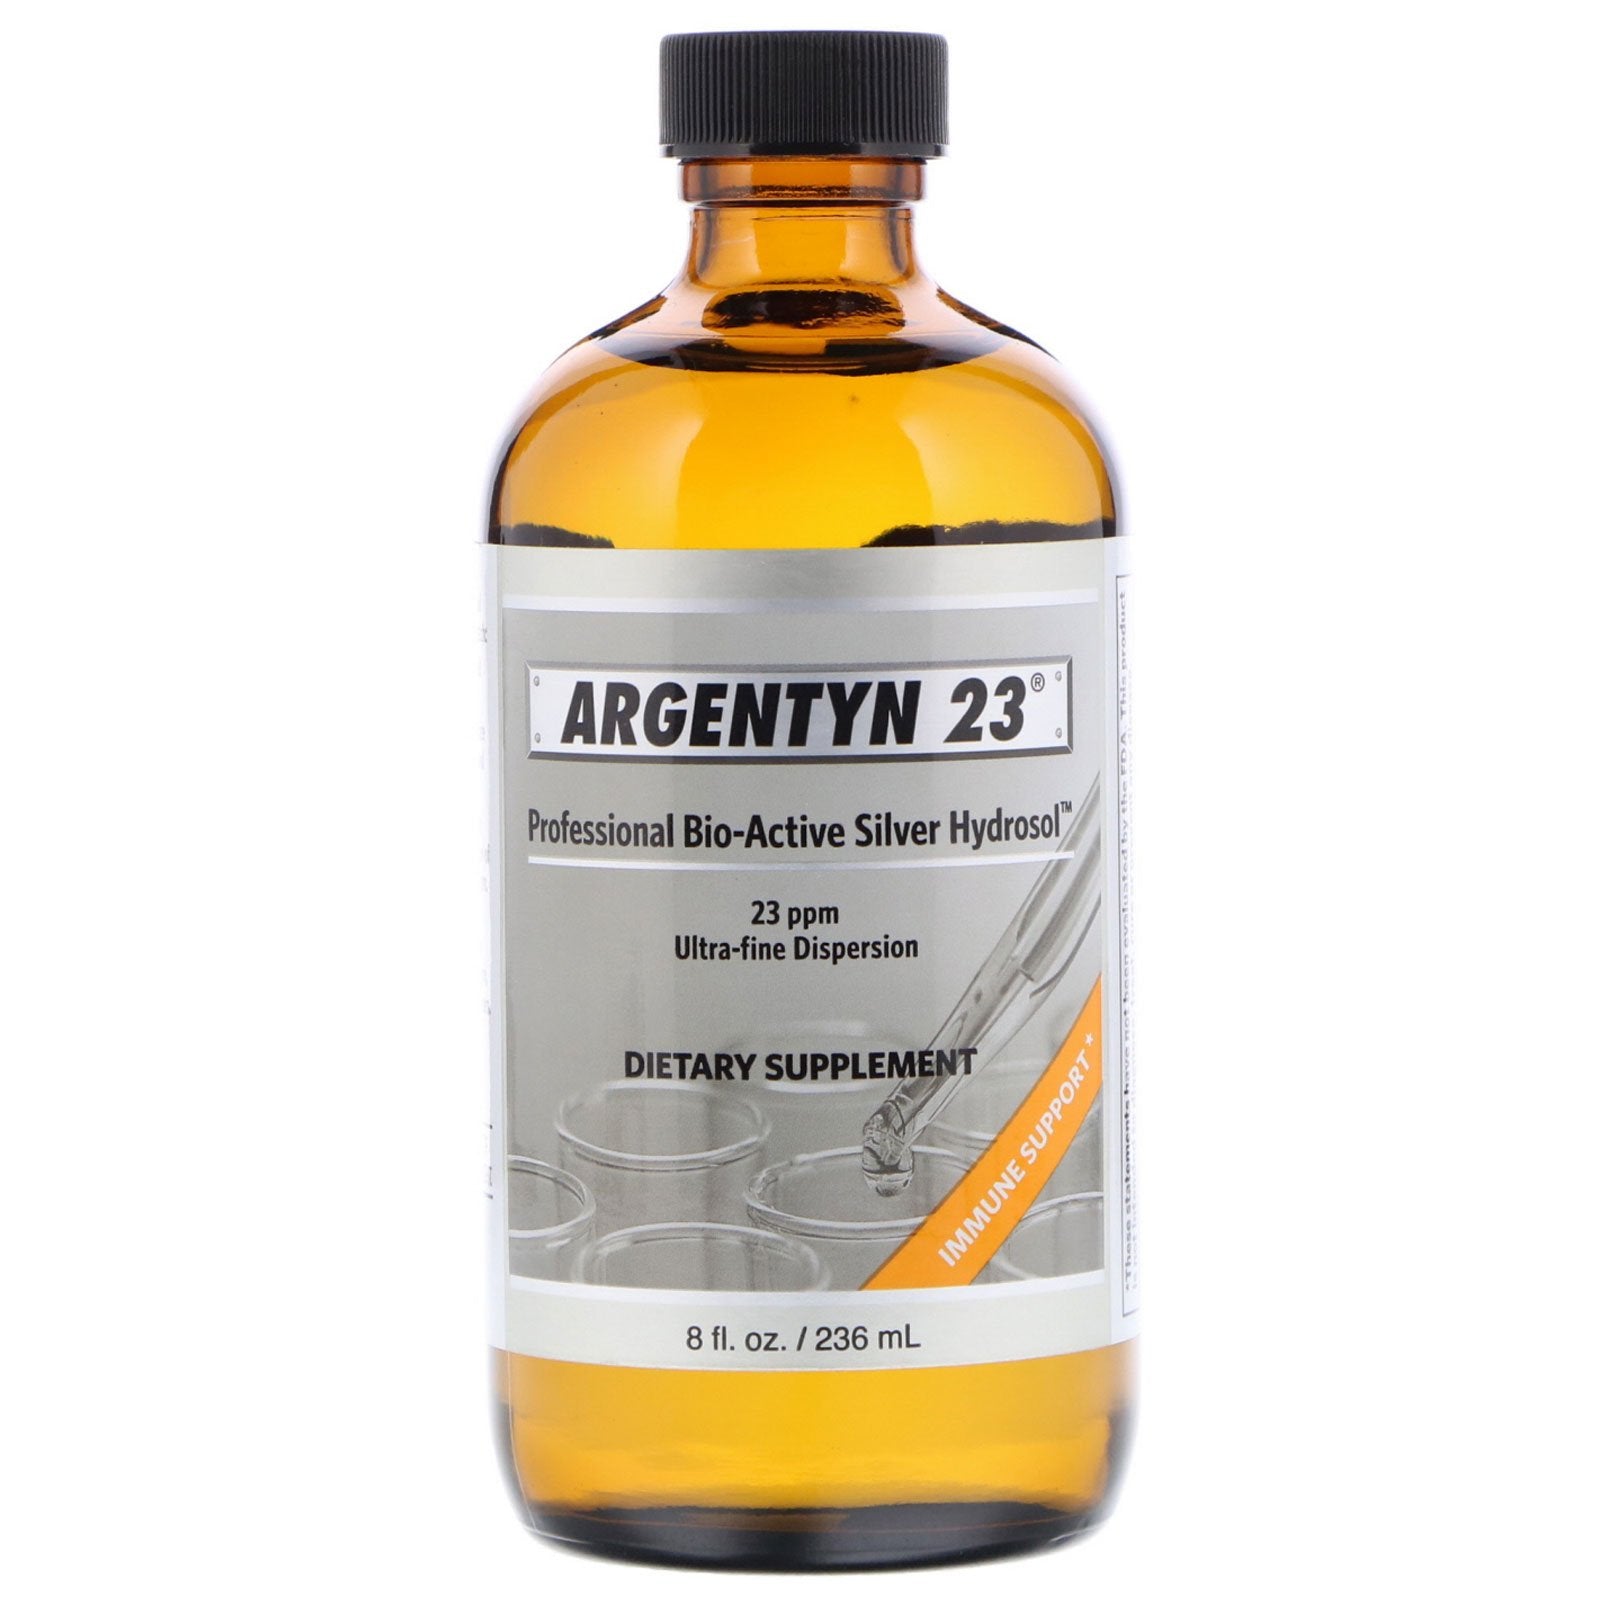 Sovereign Silver, Argentyn 23, Professional Bio-Active Silver Hydrosol, 8 fl oz (236 ml)